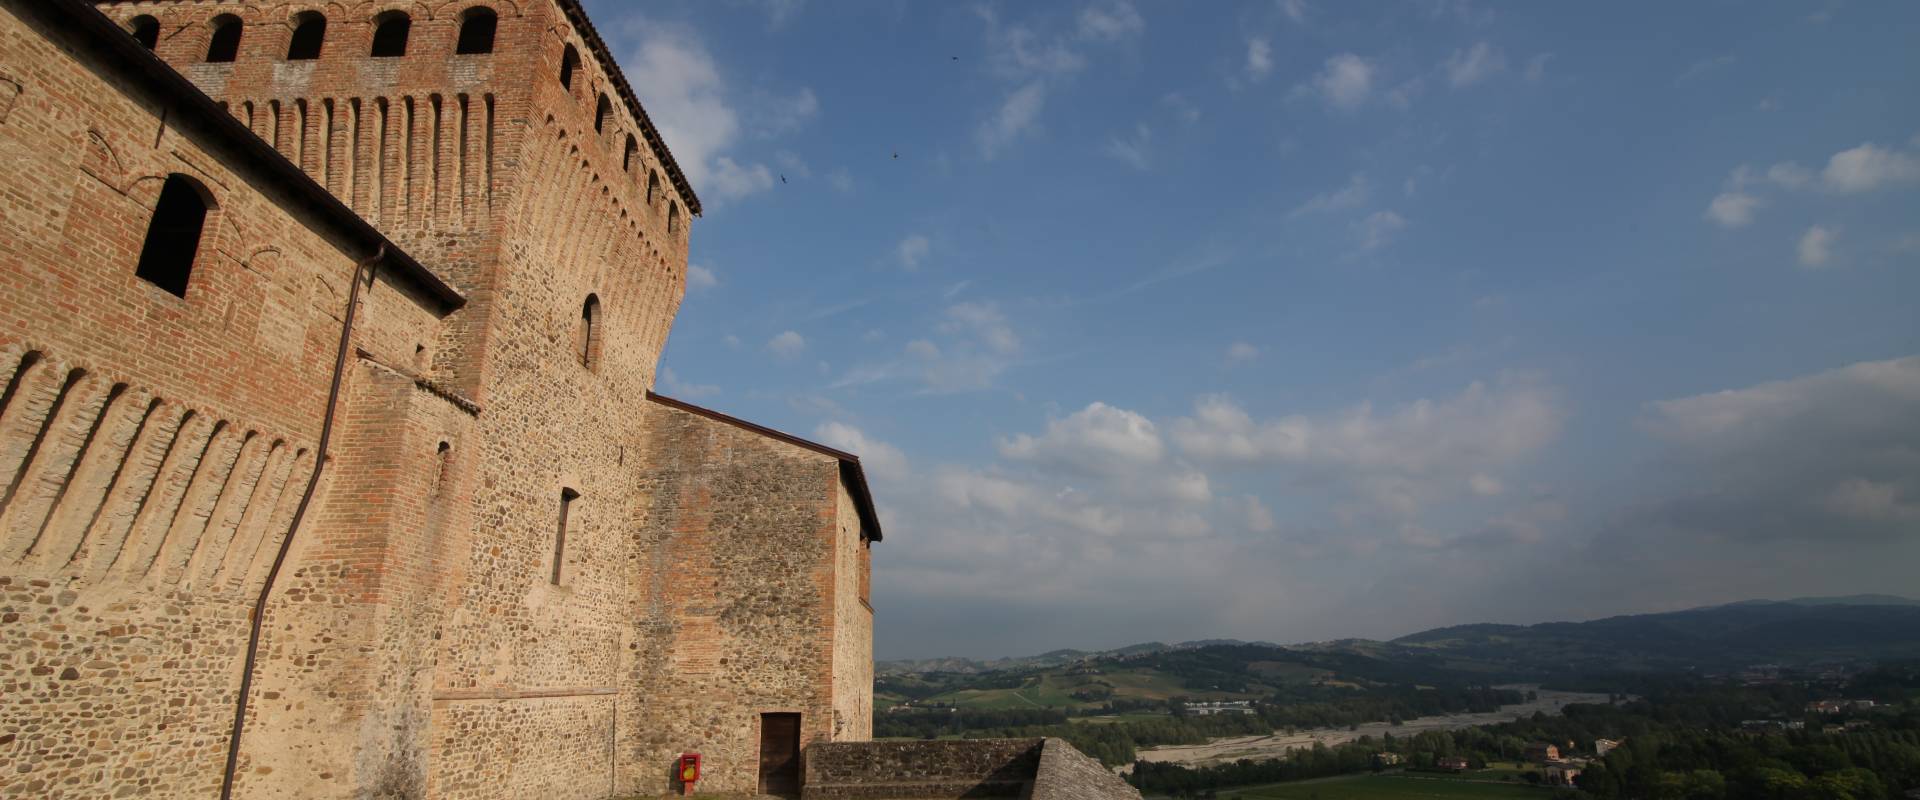 Castello di Torrechiara, particolare esterno2 foto di Sebastian Corradi